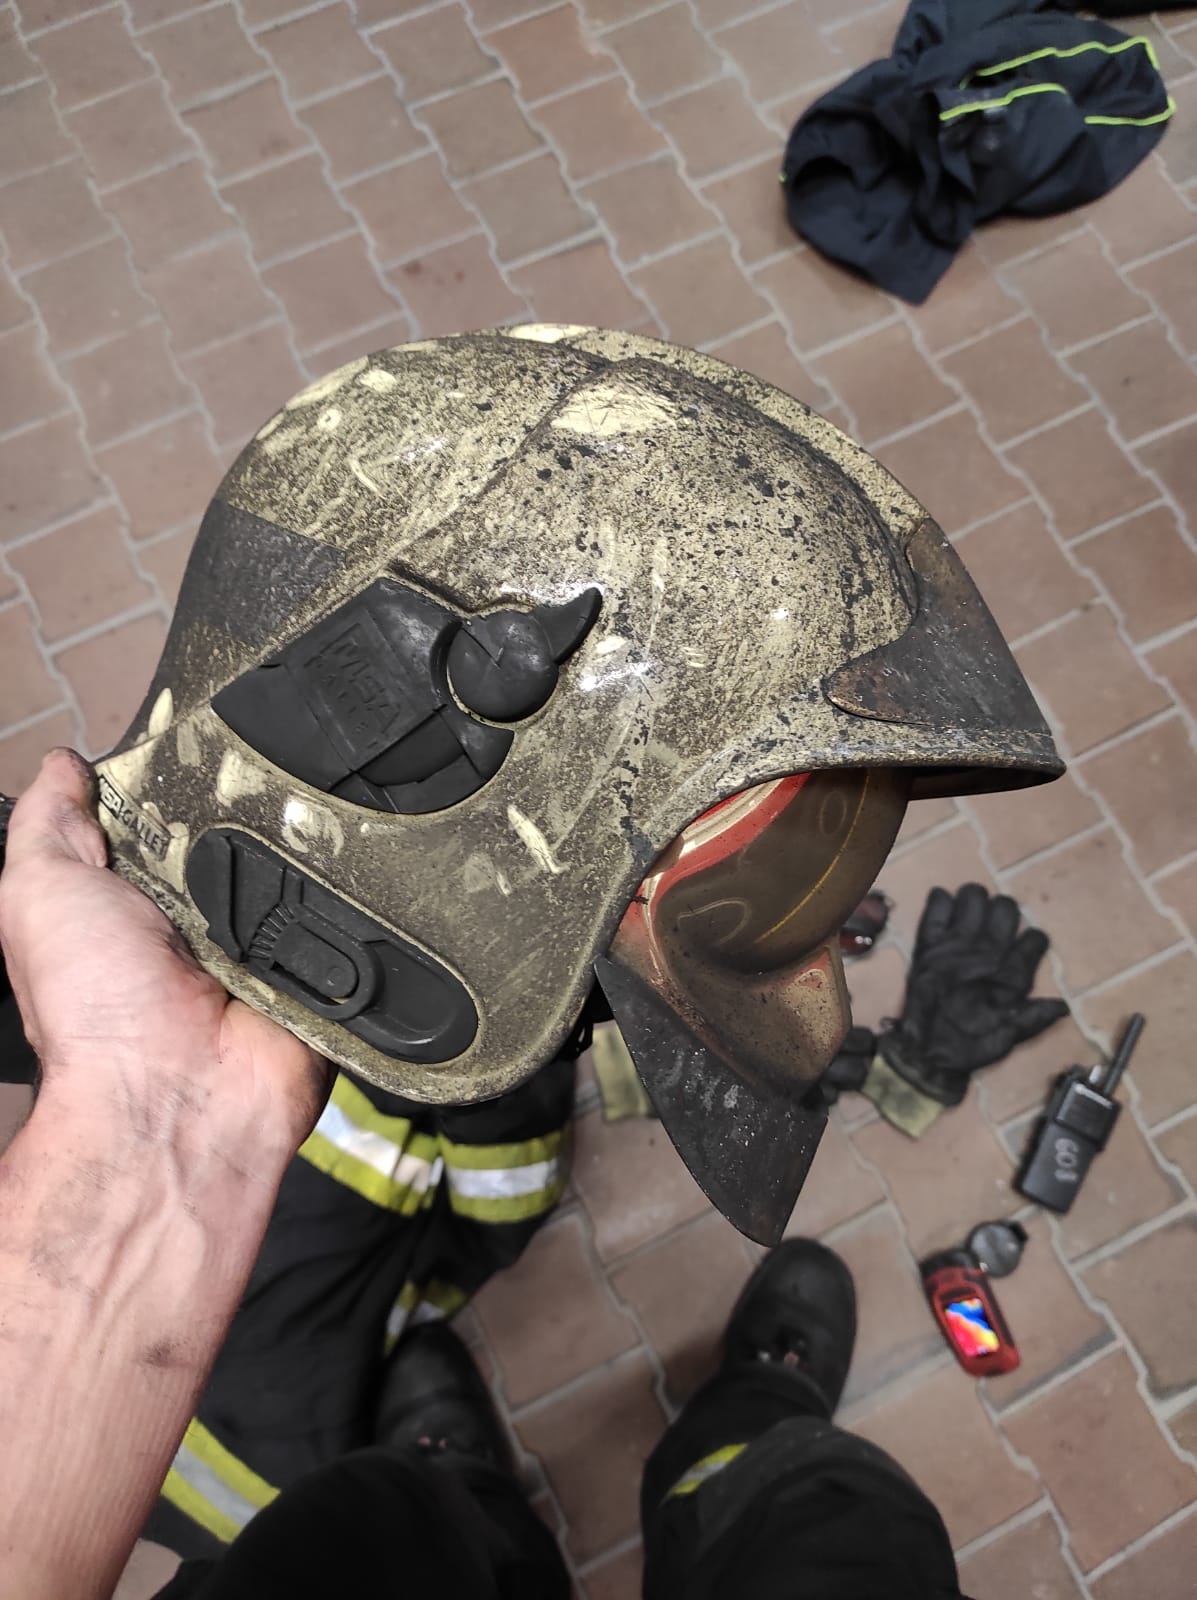 004 - helma hasiče po zásahu ve velmi zakouřeném prostoru.jpg